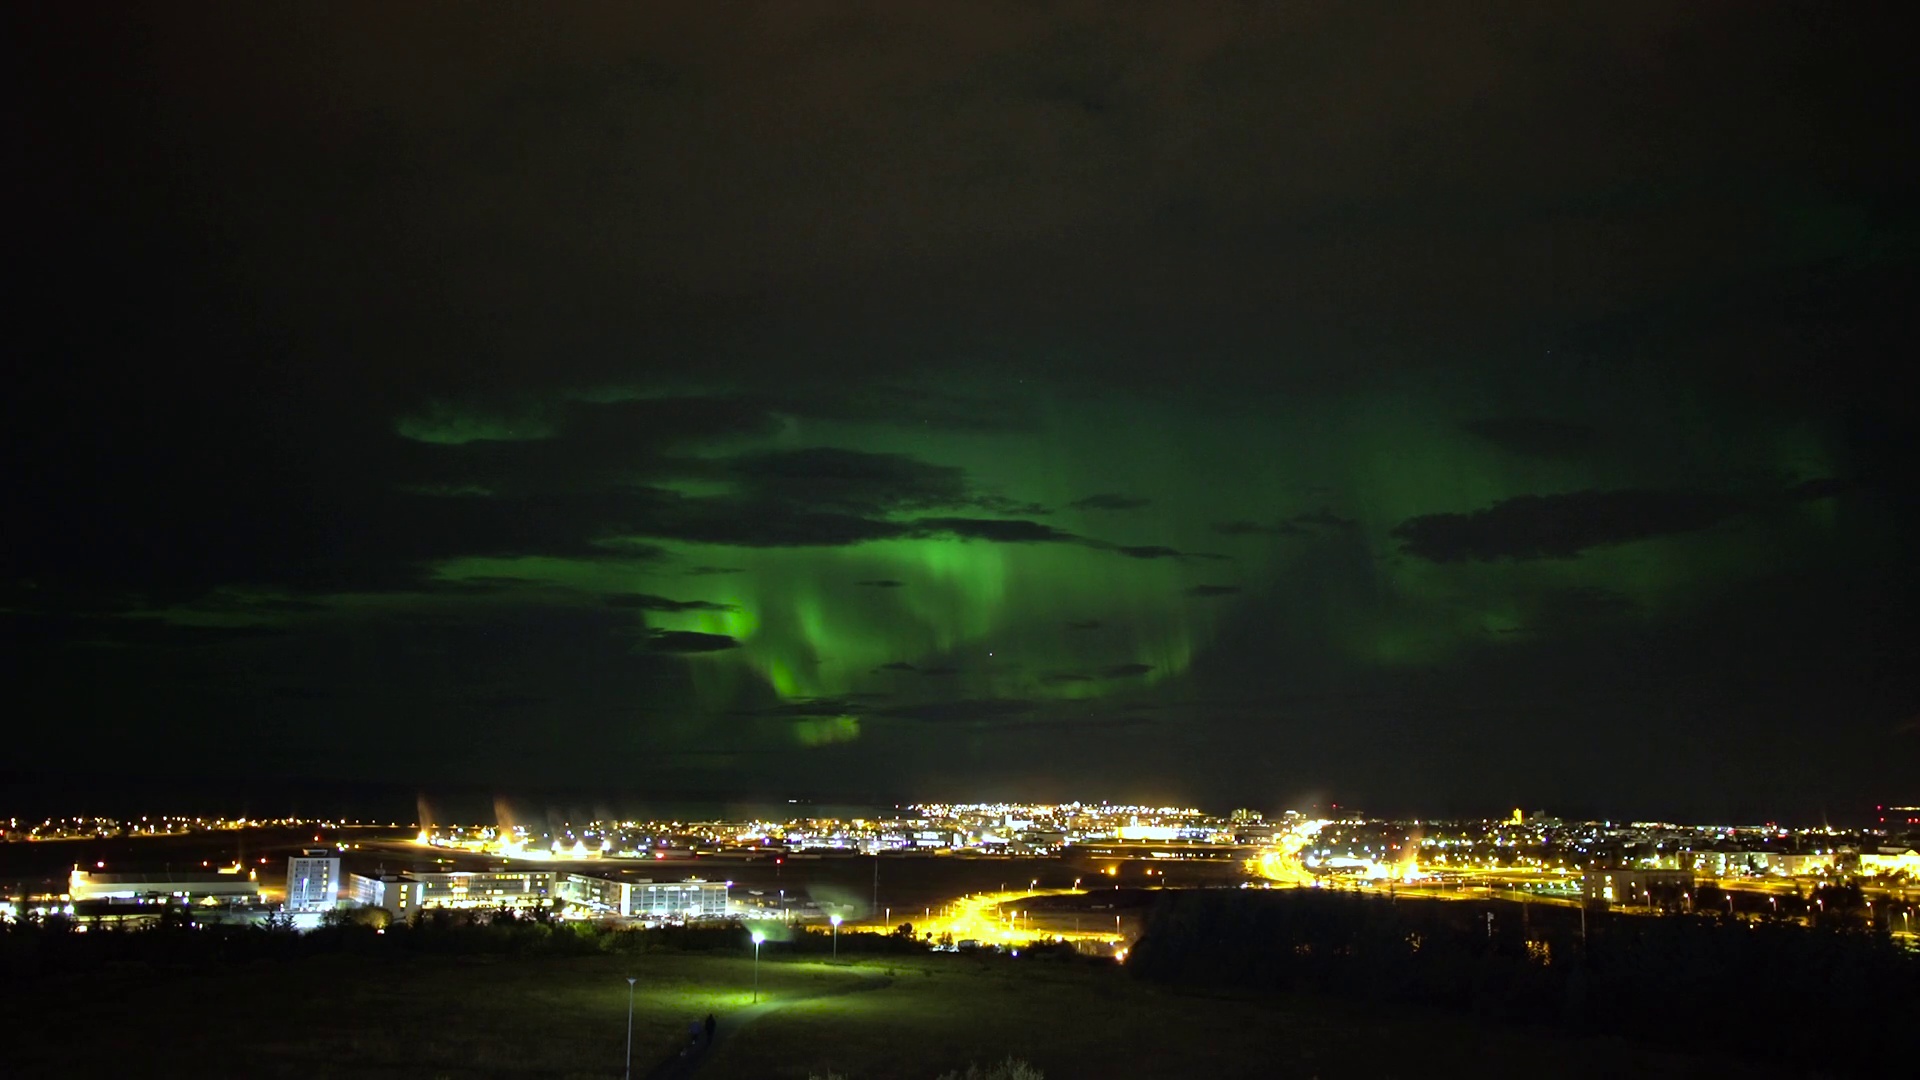 Time-lapse : de splendides aurores boréales au-dessus de Reykjavik, en Islande